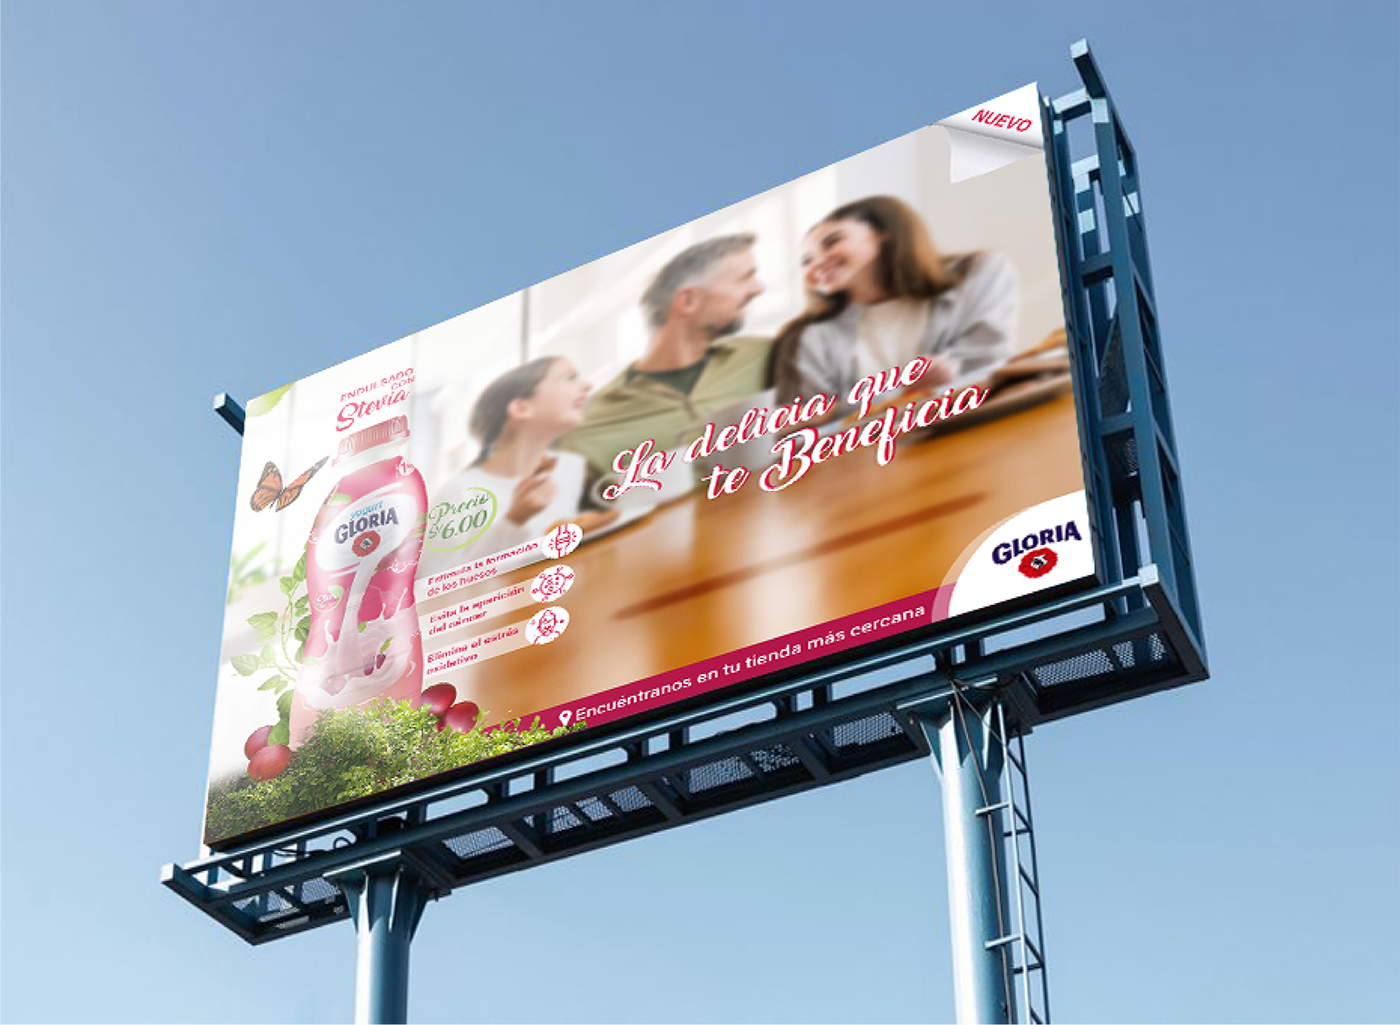 yogurt lanzamiento camu camu Gloria peru Packaging publicidad